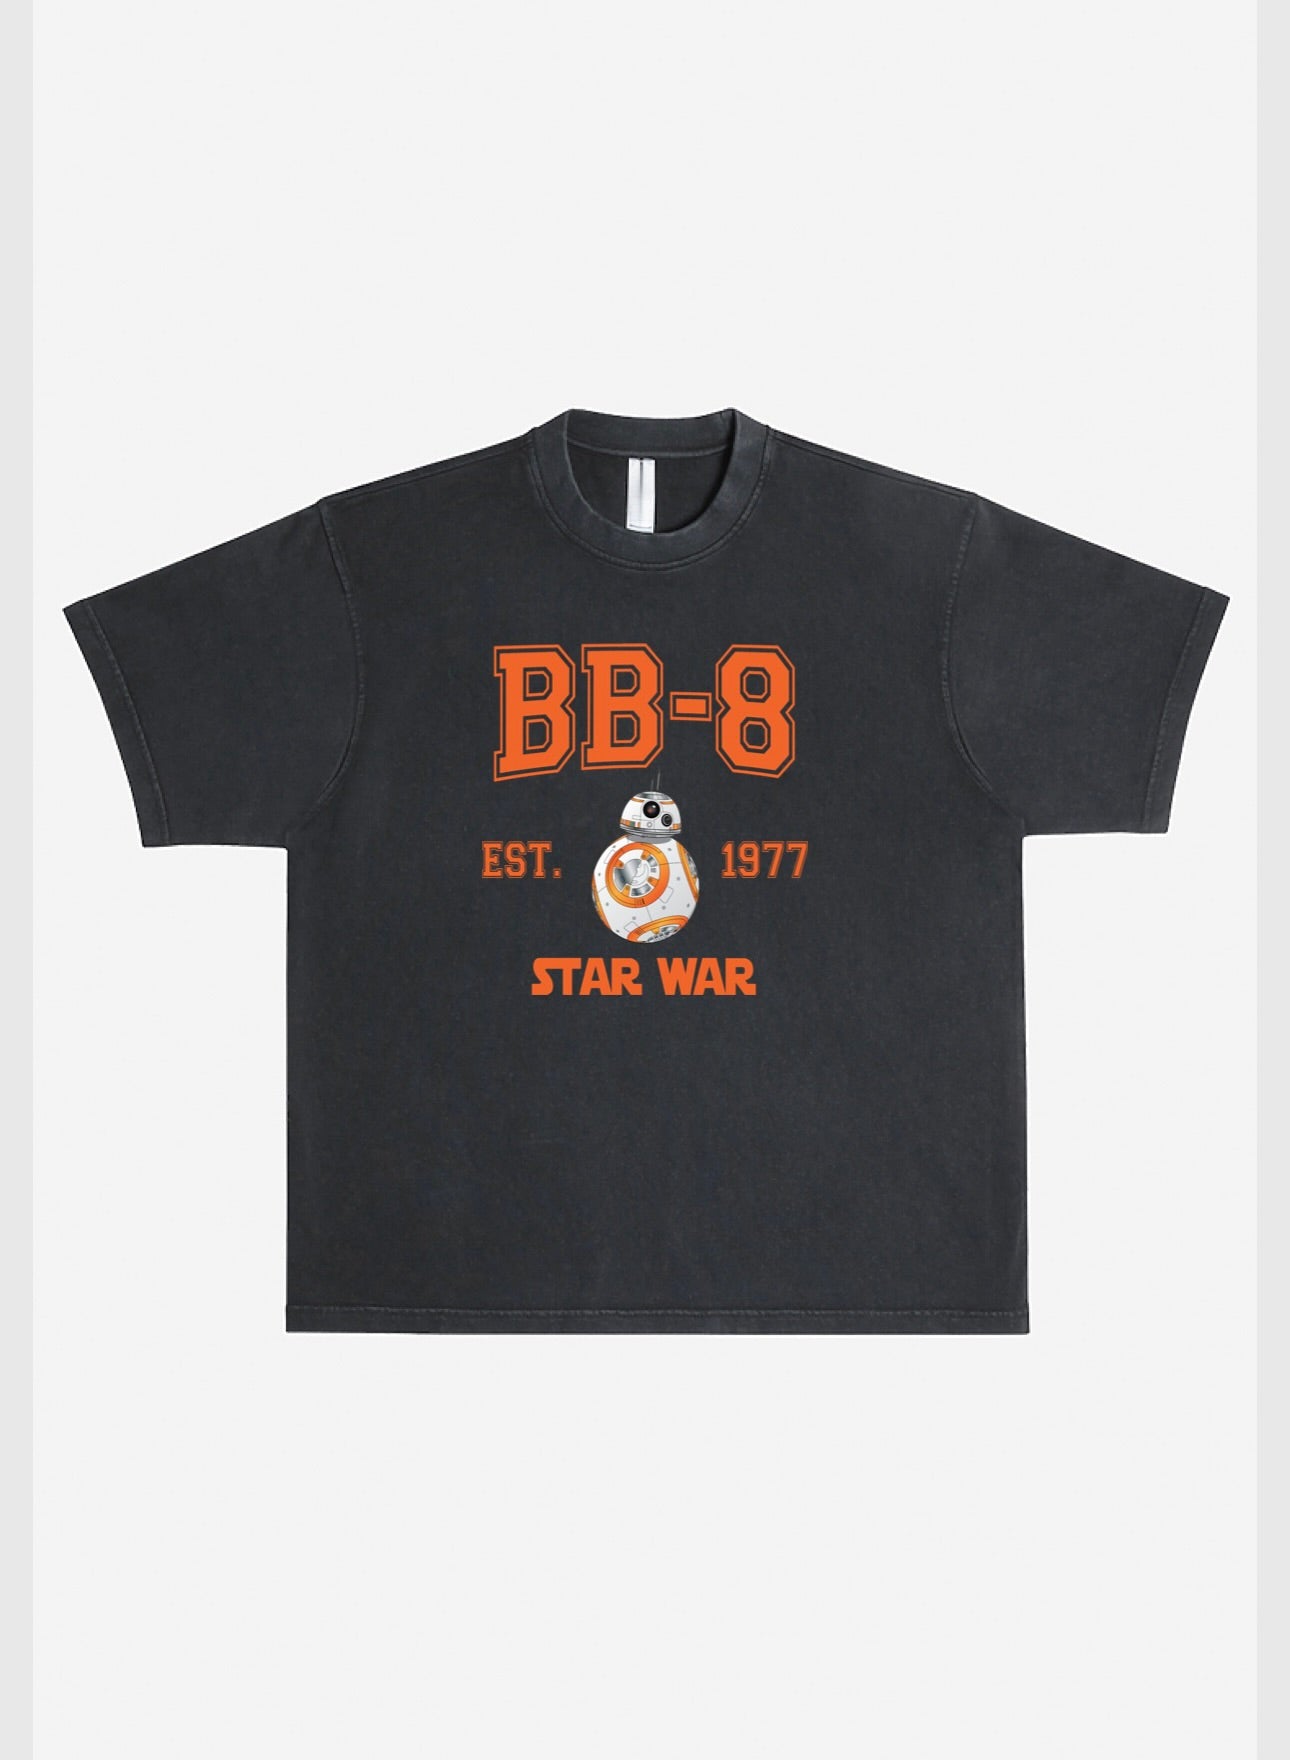 BB-8 T-Shirt